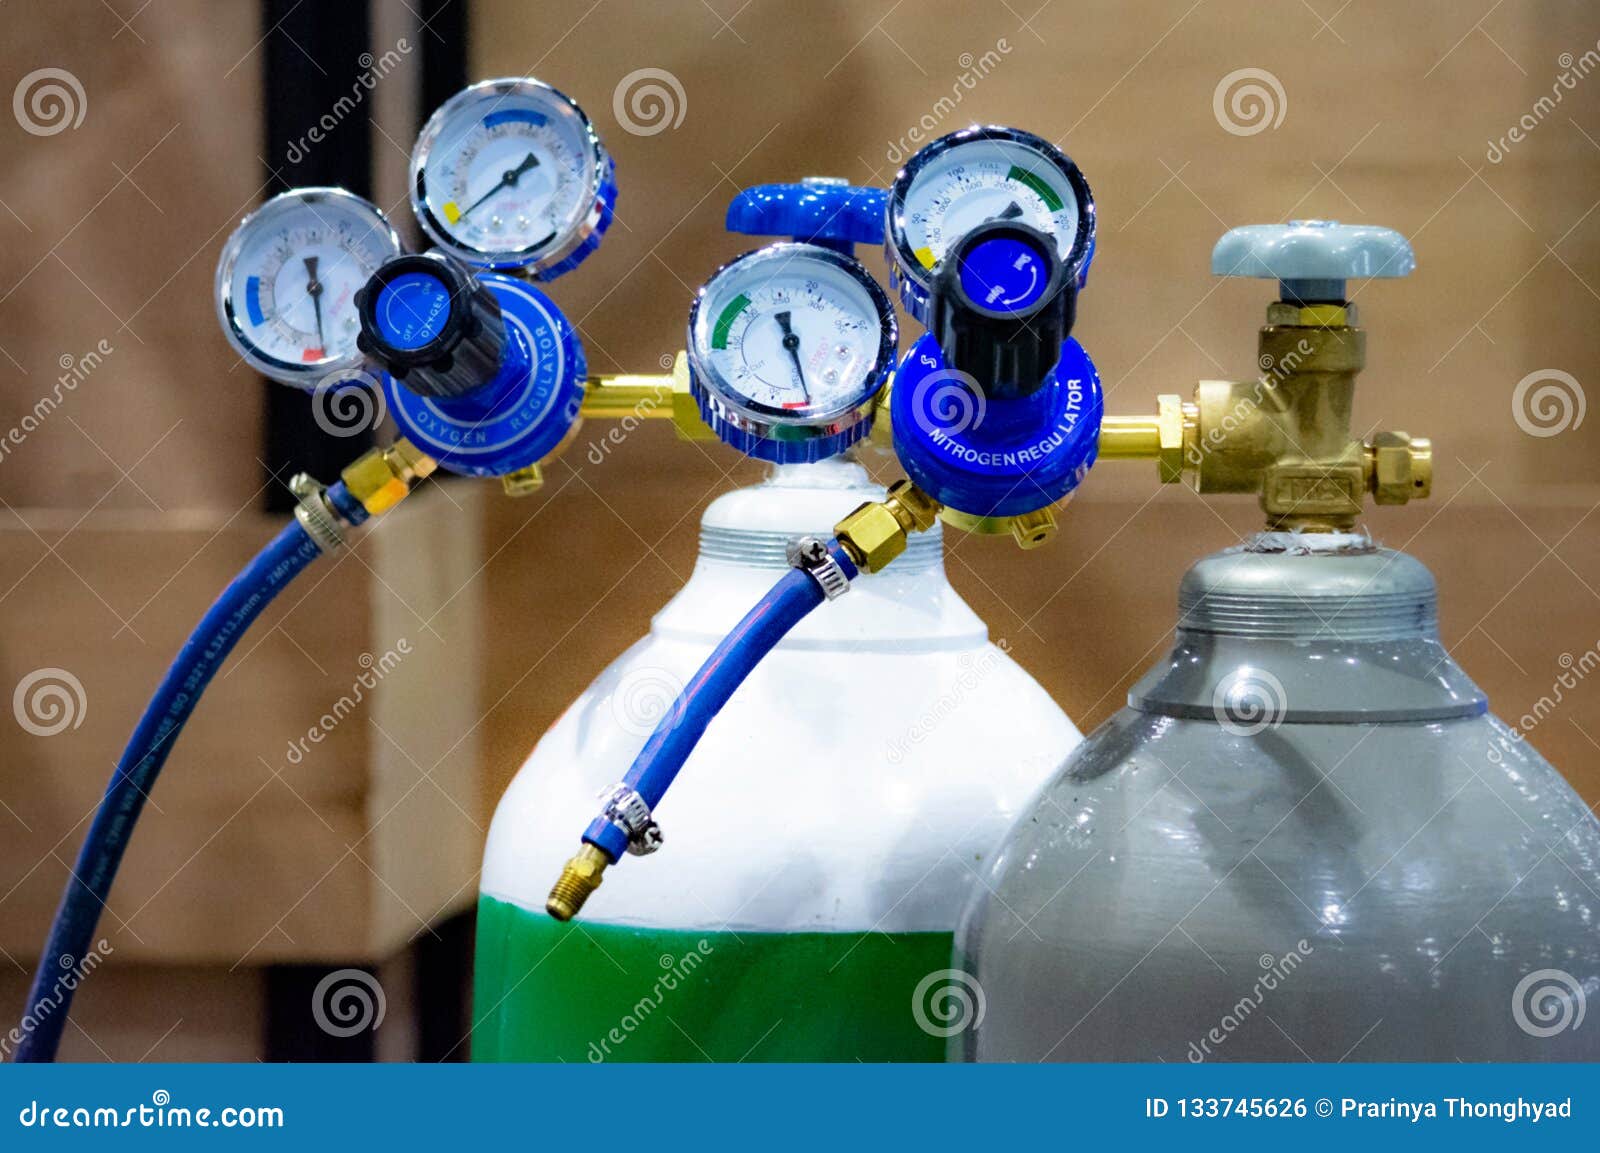 oxygen cylinder and regulator gauge in factory, equipment